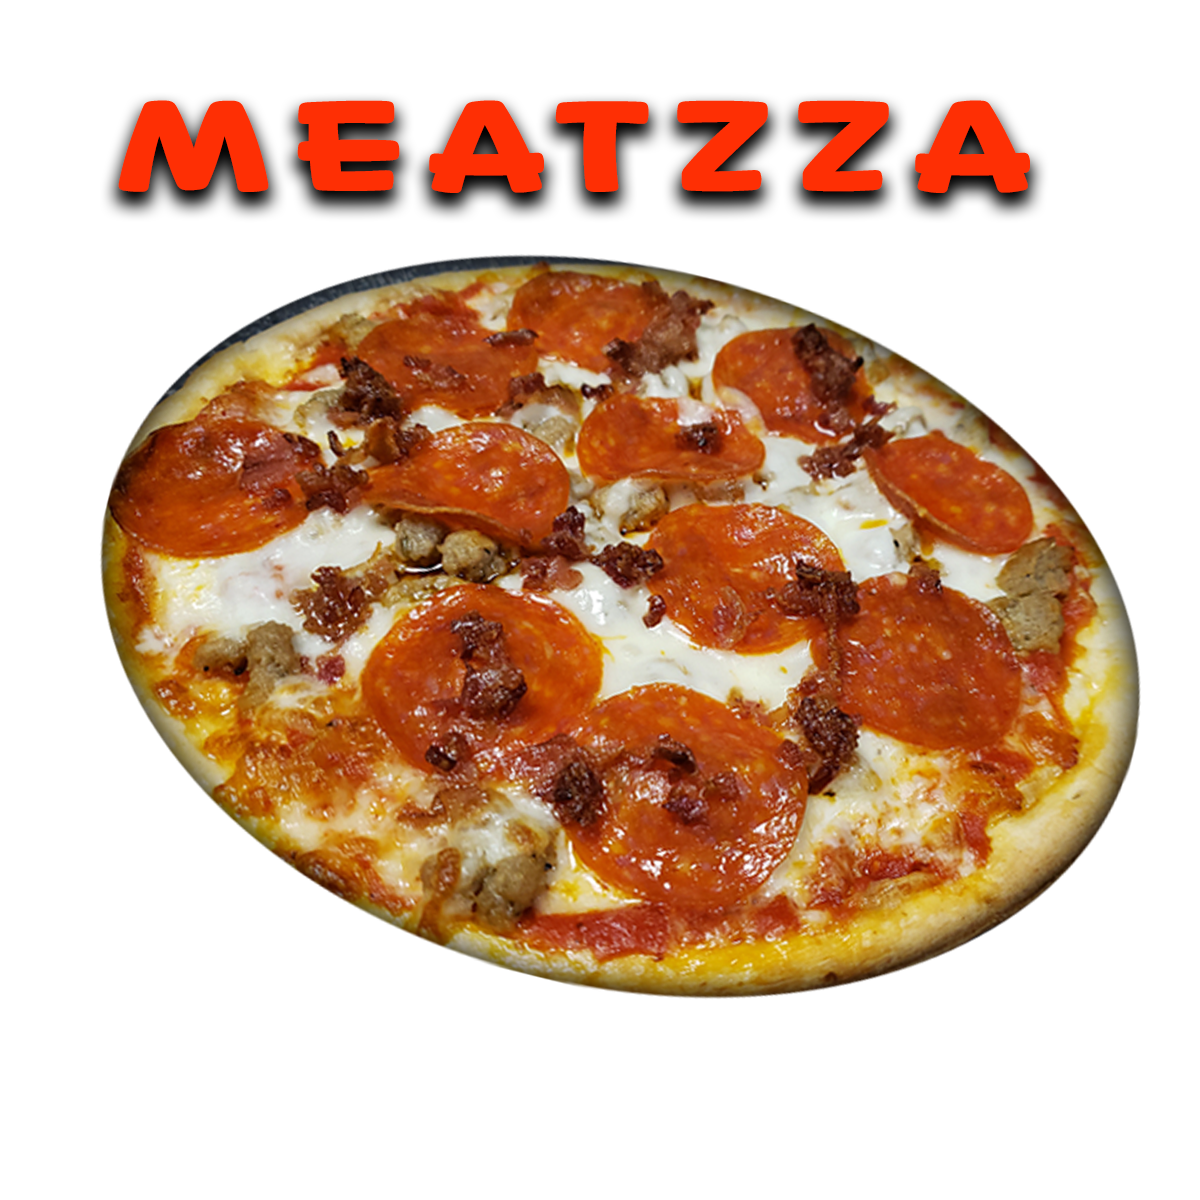 Meattzza